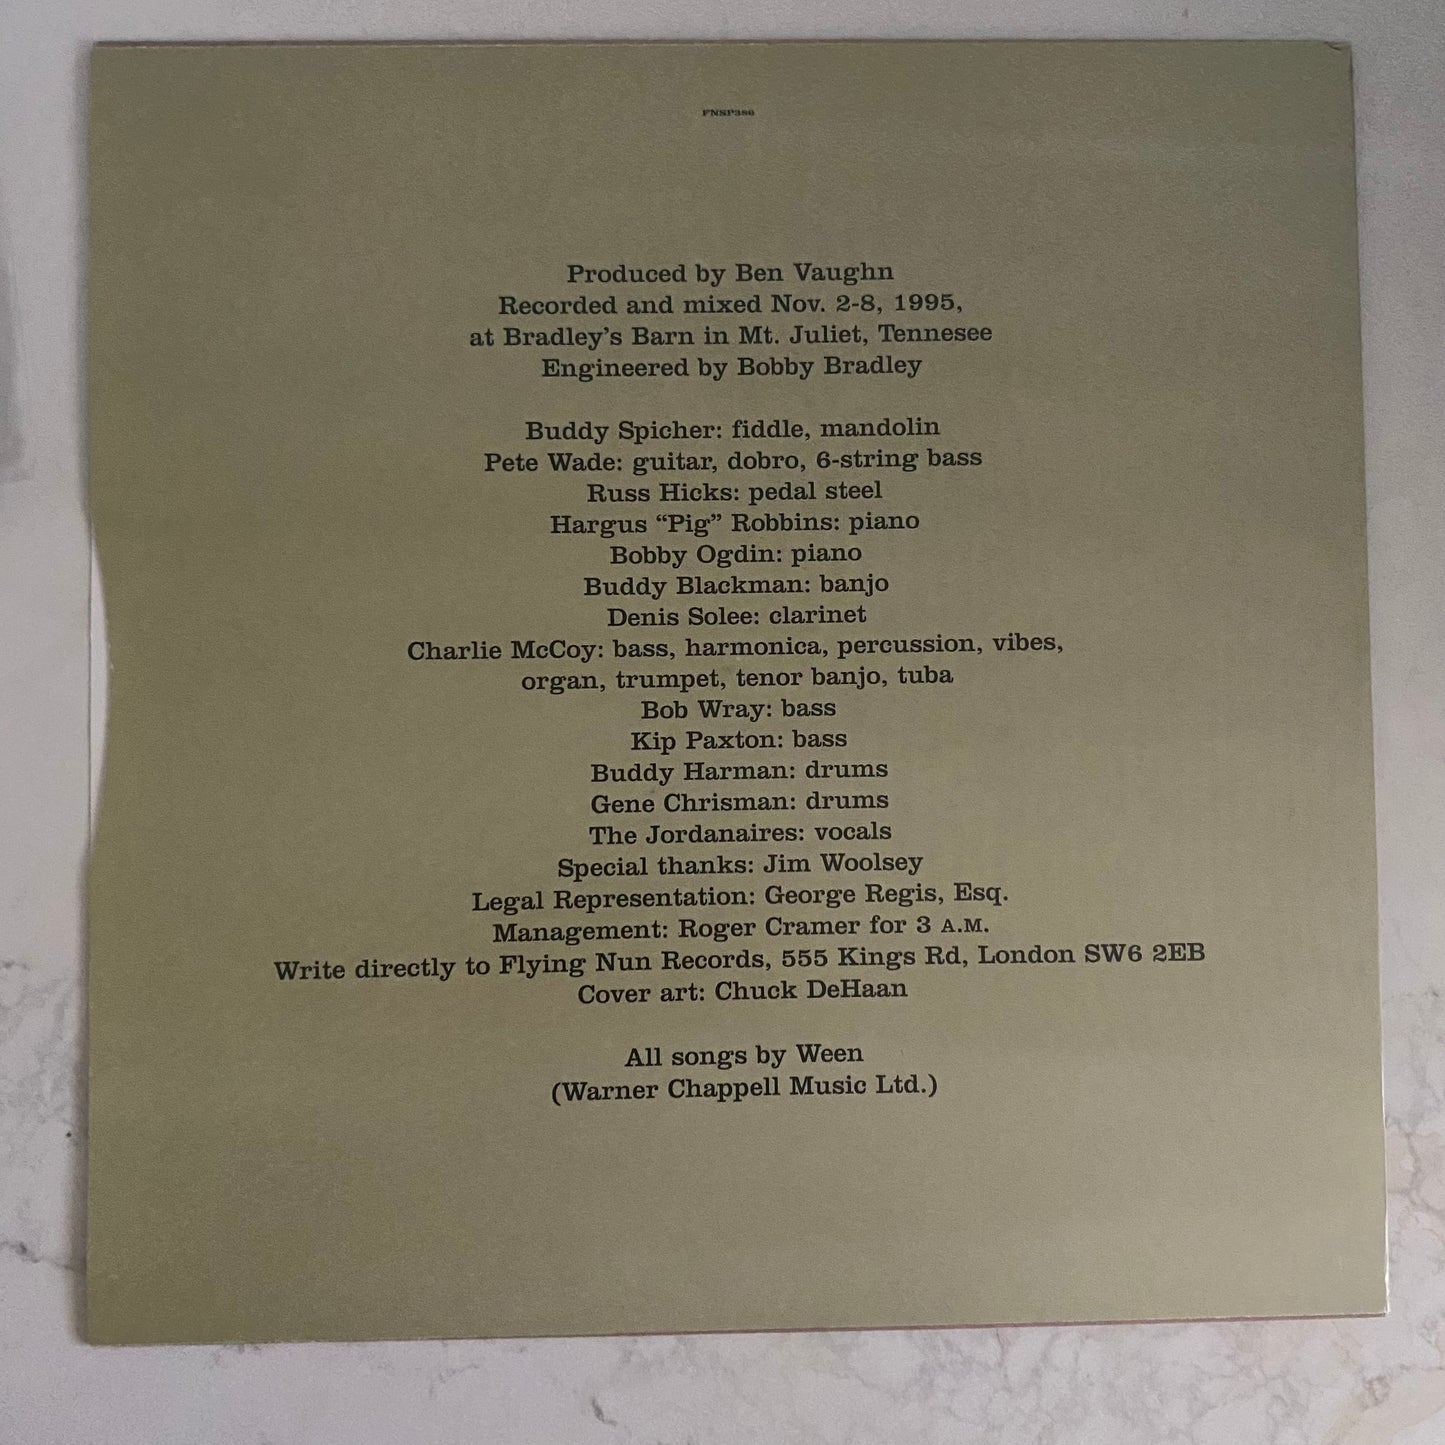 Ween - 12 Golden Country Greats (LP, Album, Ltd, Num). ROCK